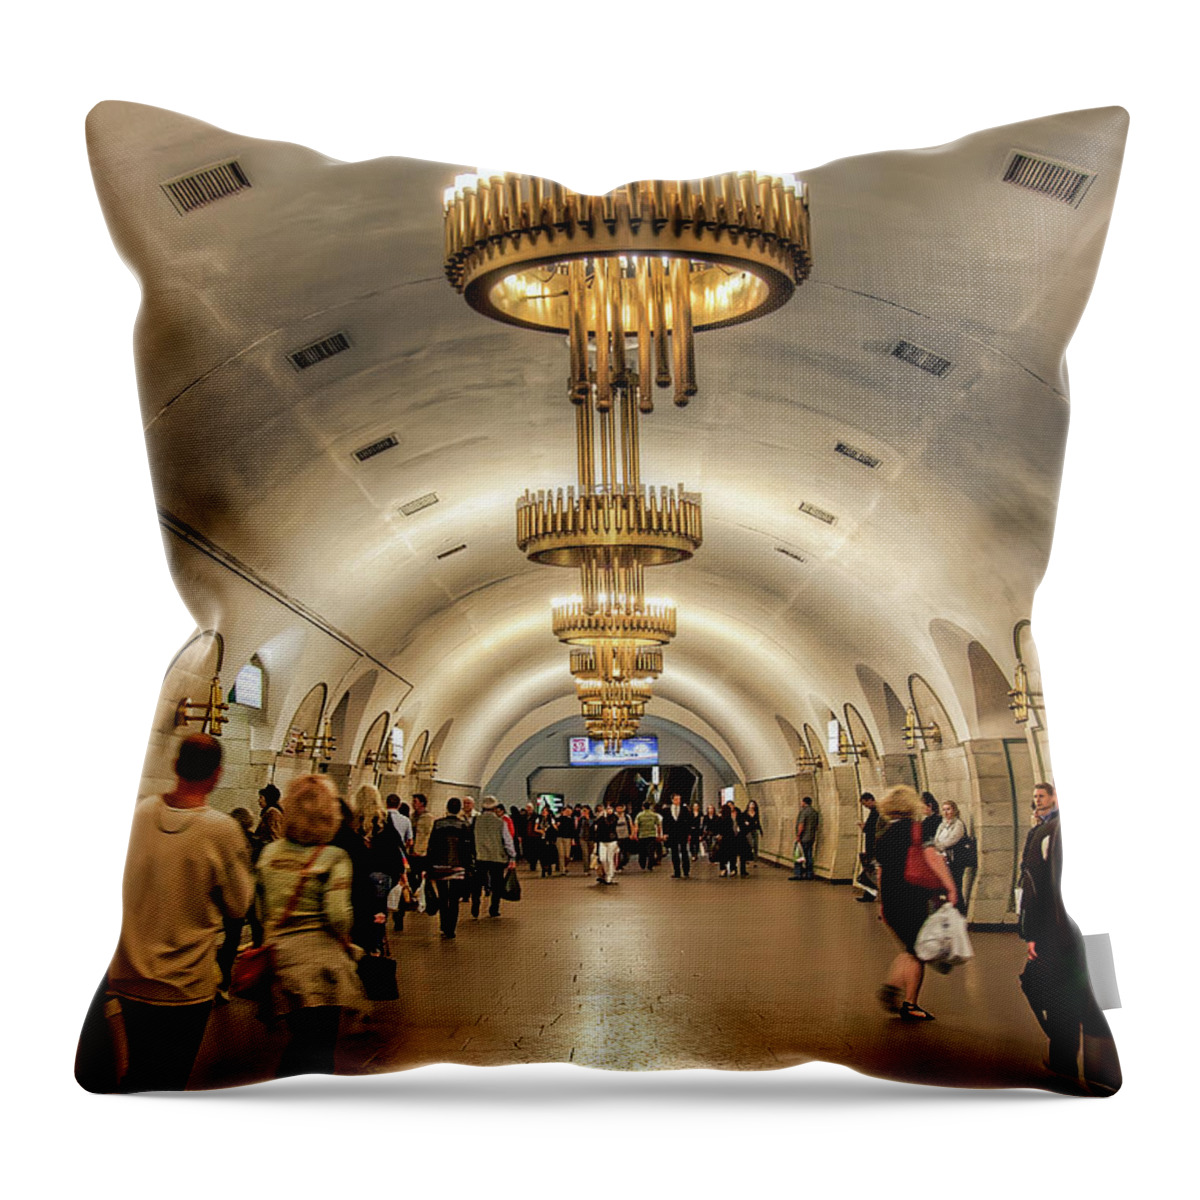  Kiev Metro Throw Pillow featuring the pyrography Kiev Metro by Anna Rumiantseva